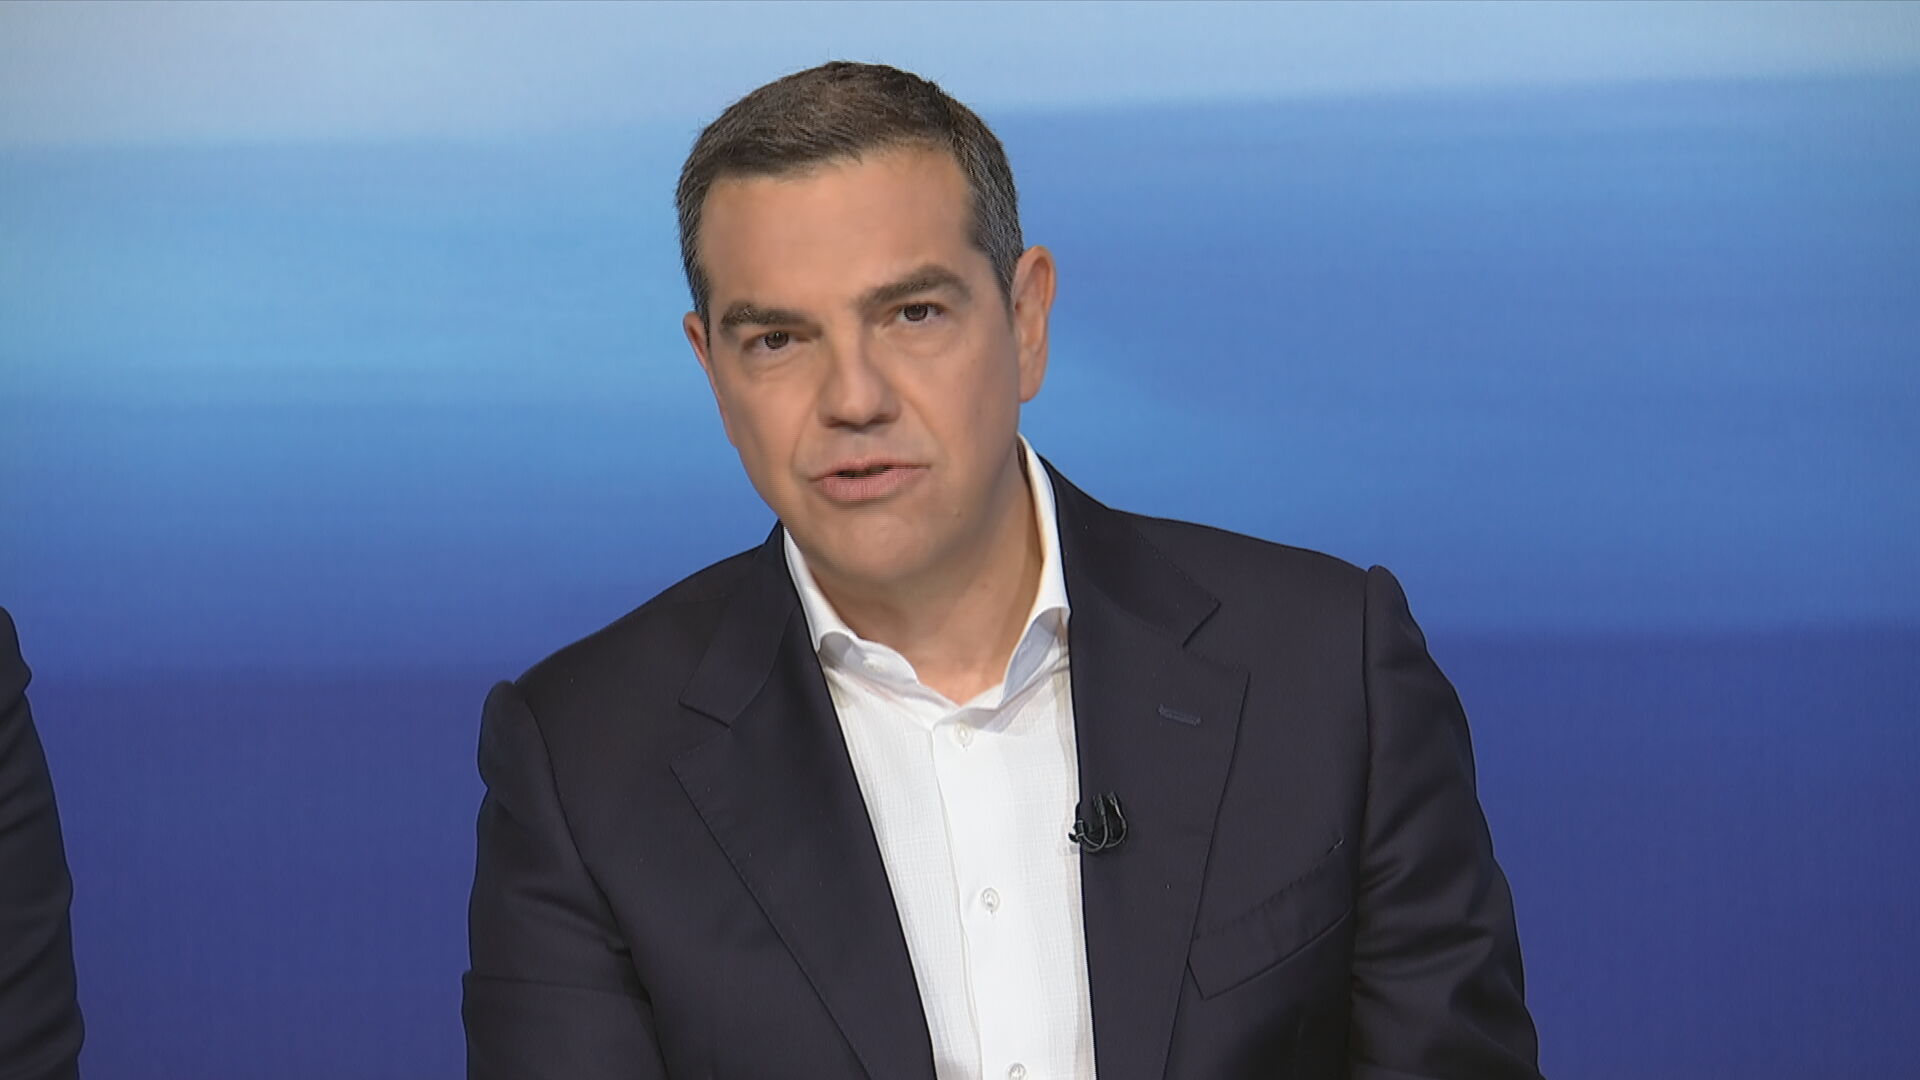 Αλ. Τσίπρας στο debate: Χρωστάμε στον ελληνικό λαό να ξανακάνουμε την Ελλάδα μία κανονική ευρωπαϊκή χώρα